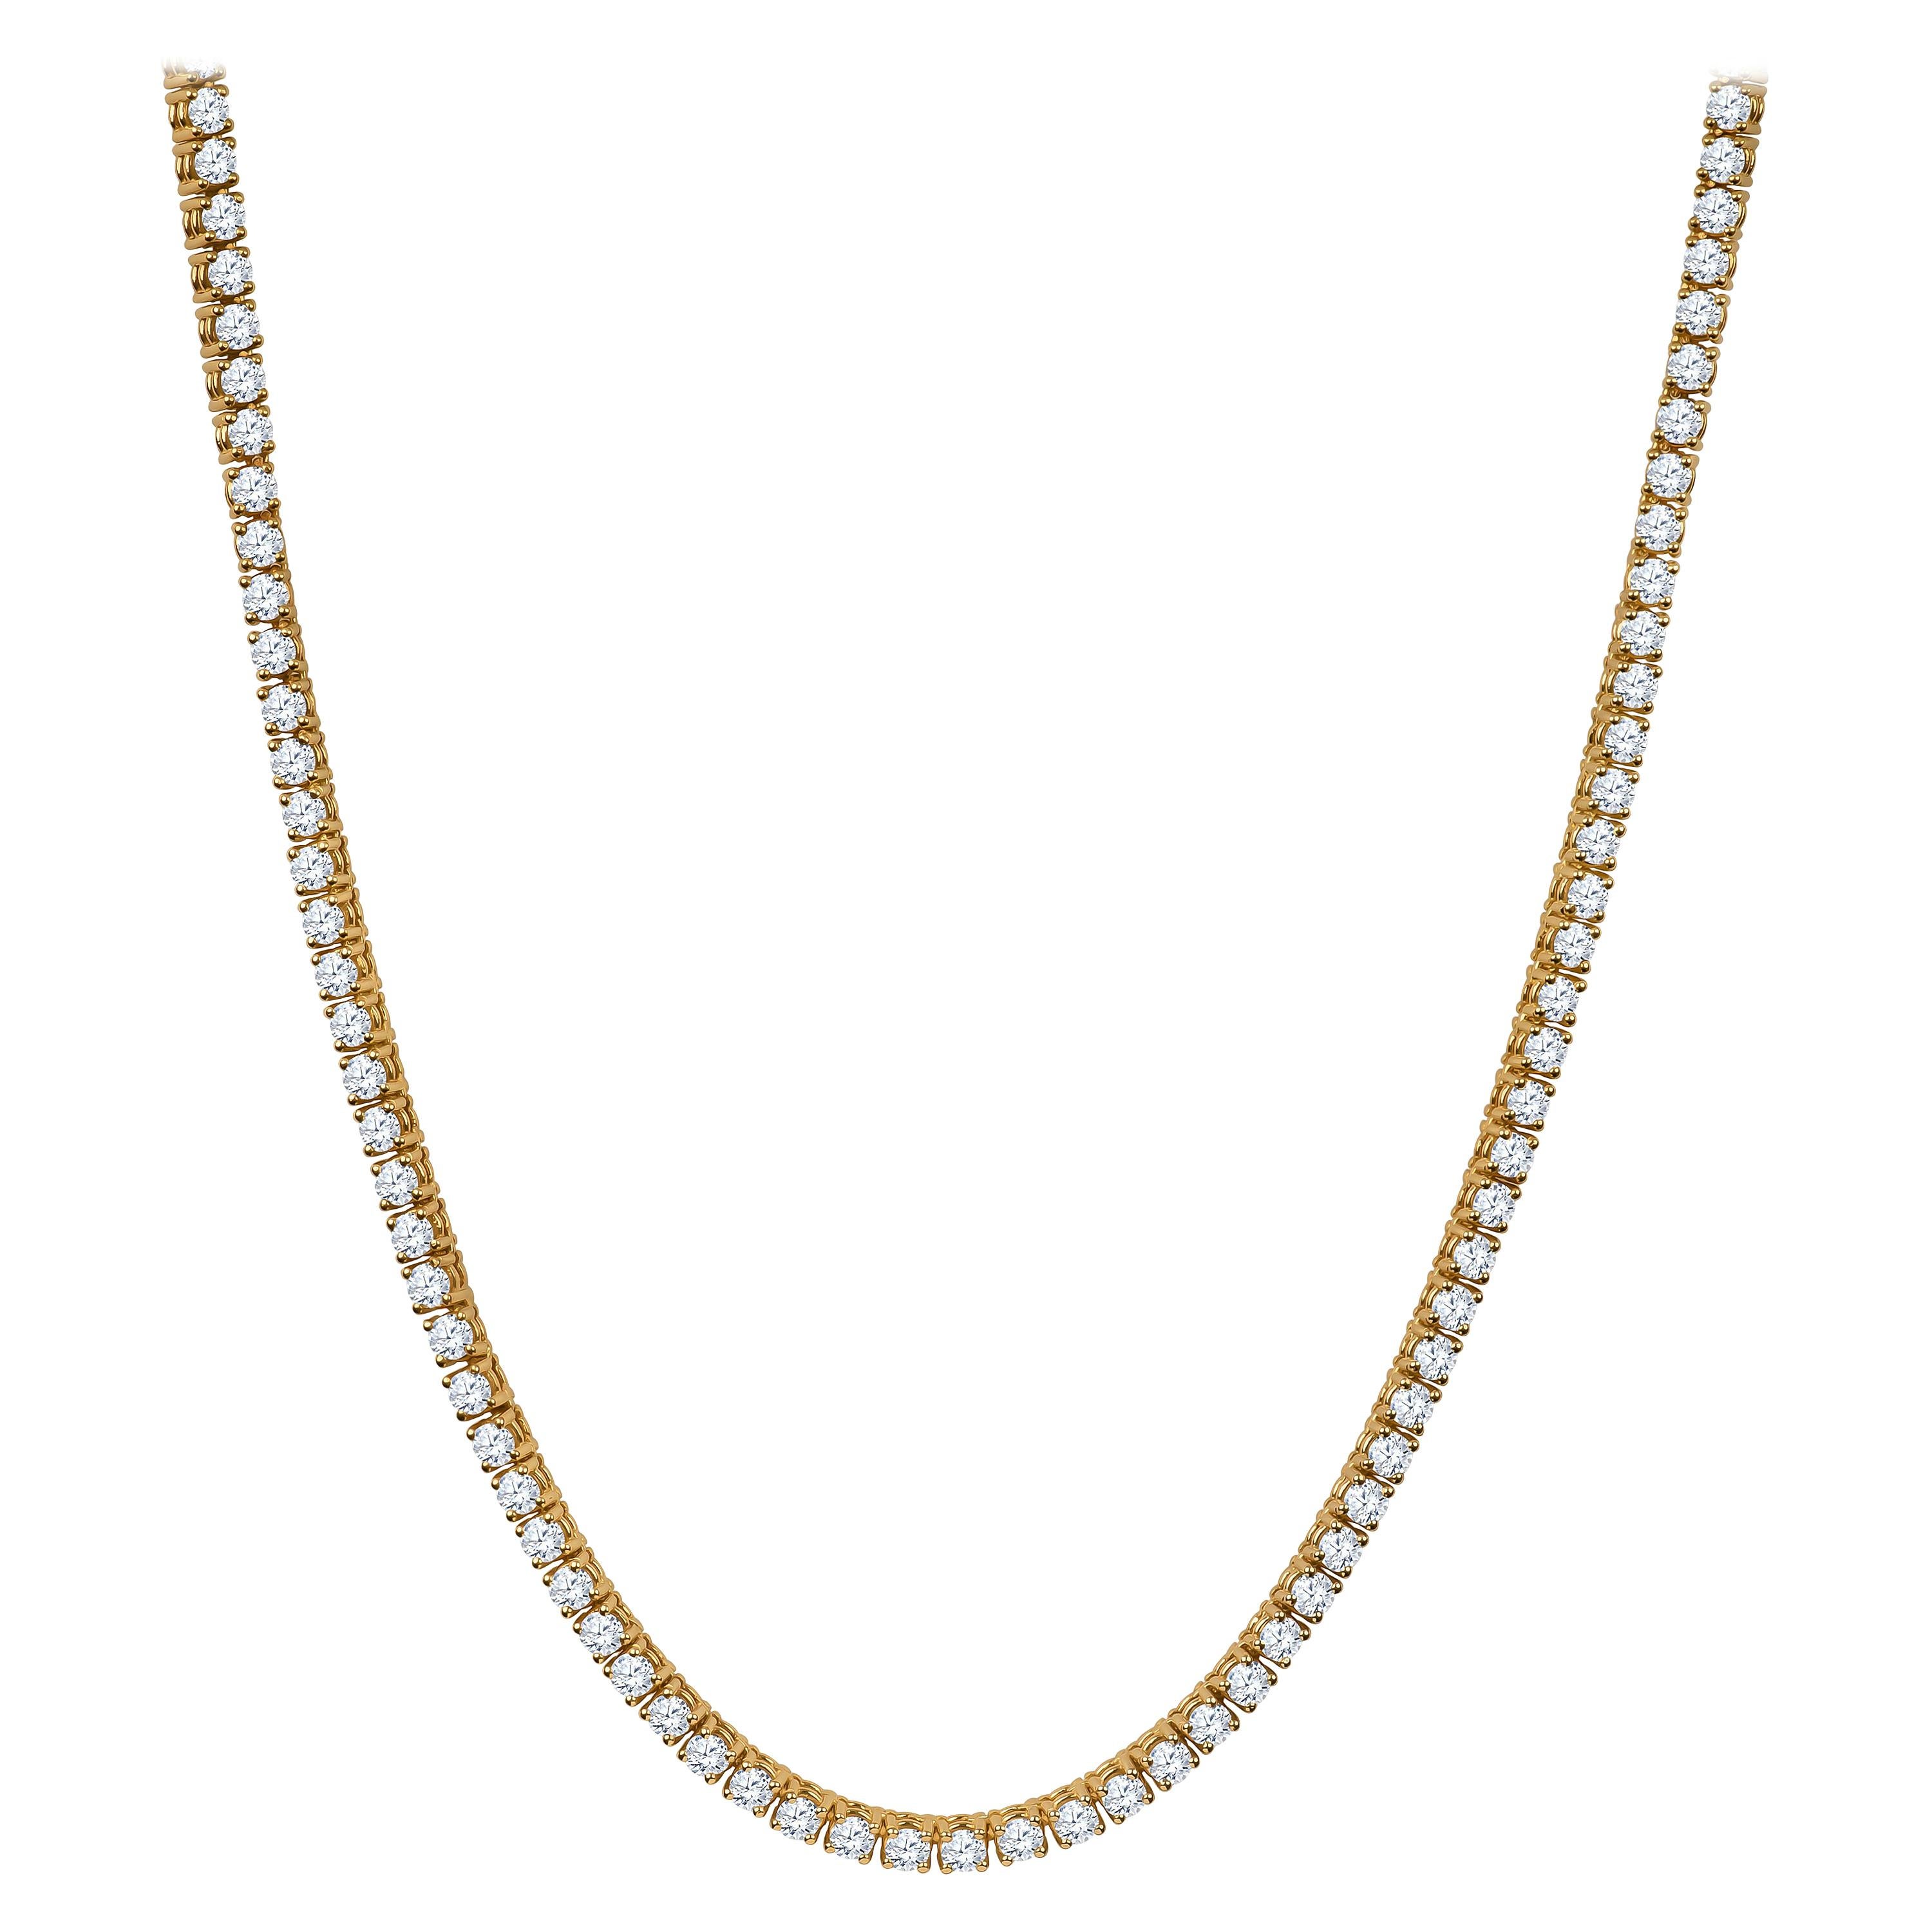 23.97 Carat Total Weight Round Brilliant Diamond Necklace in 14 Karat Gold